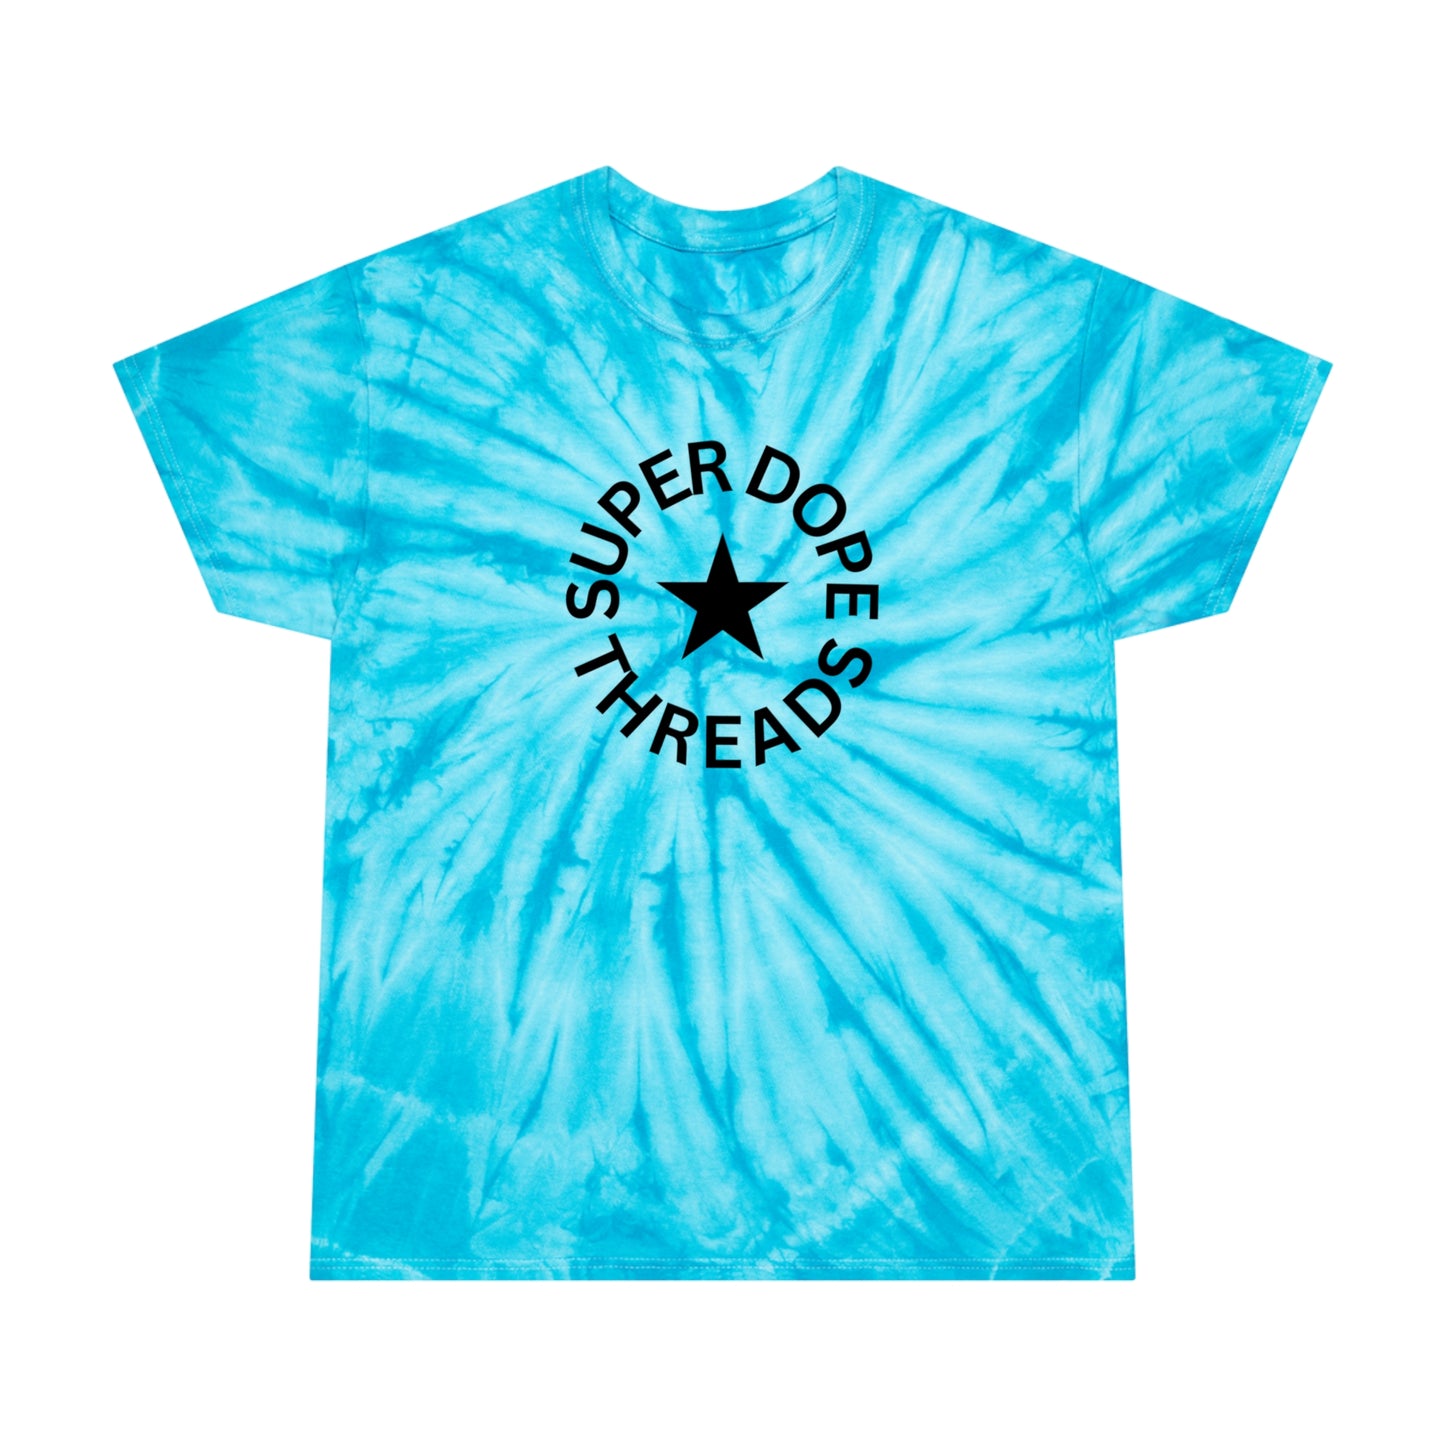 Super Dope Threads - Tie-Dye Logo Tee